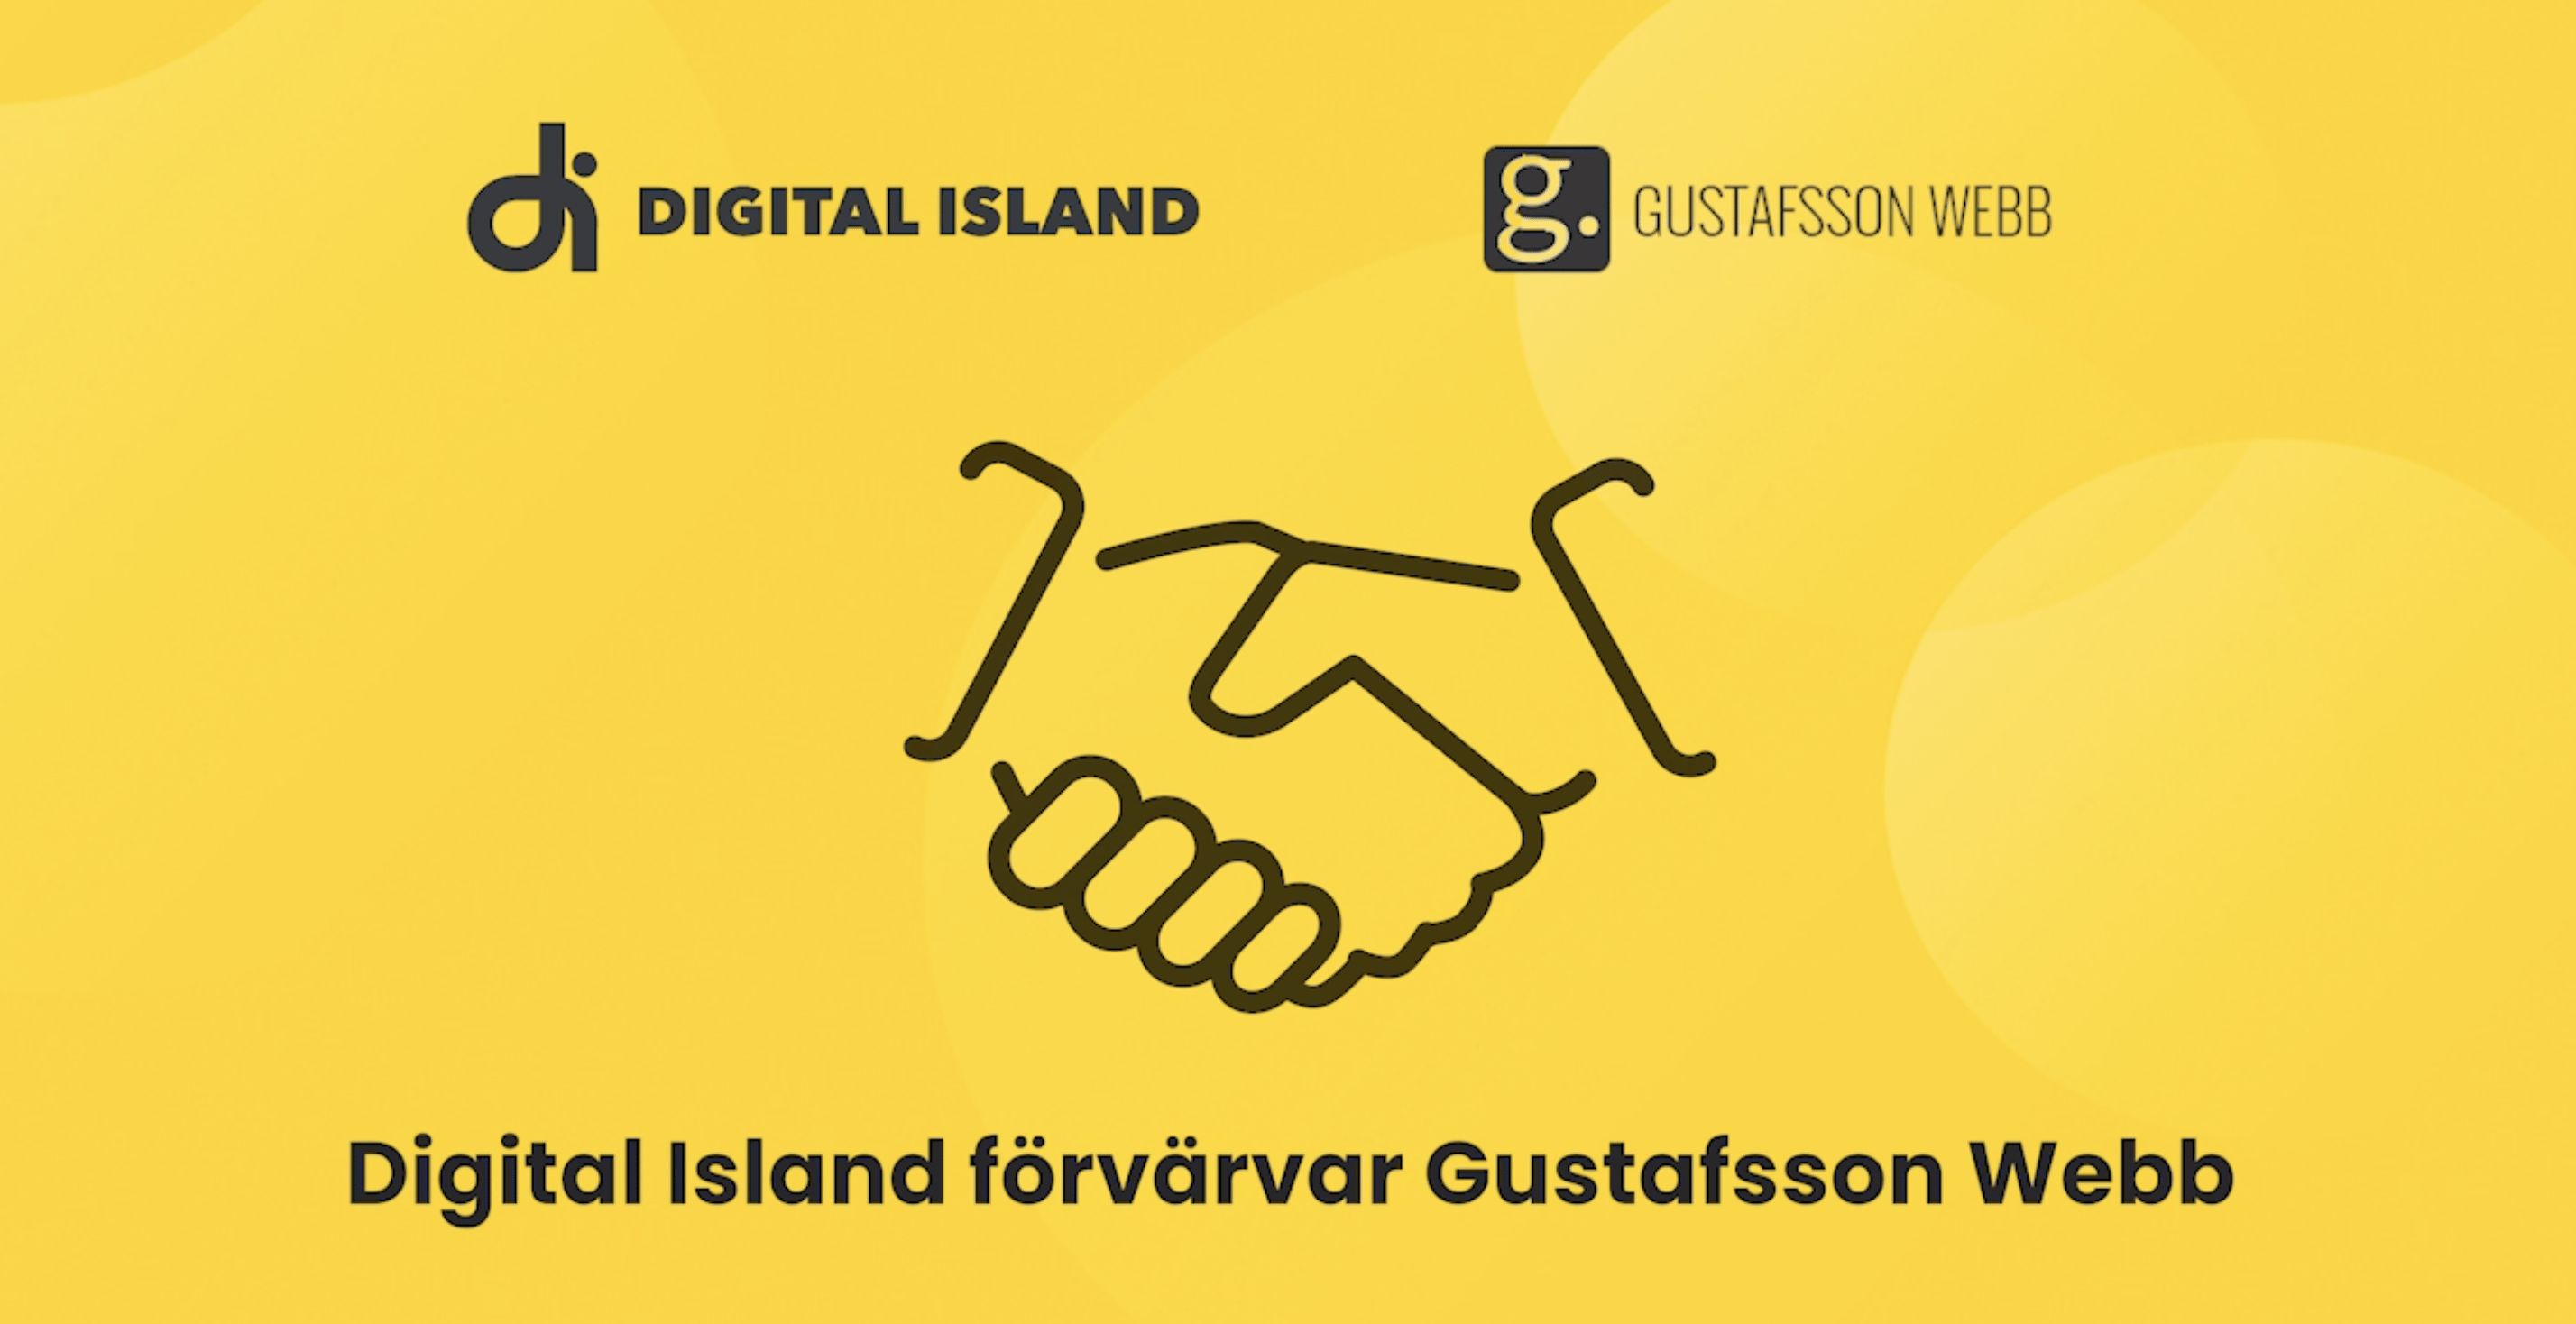 Digital Island förvärvar Gustafsson Webb